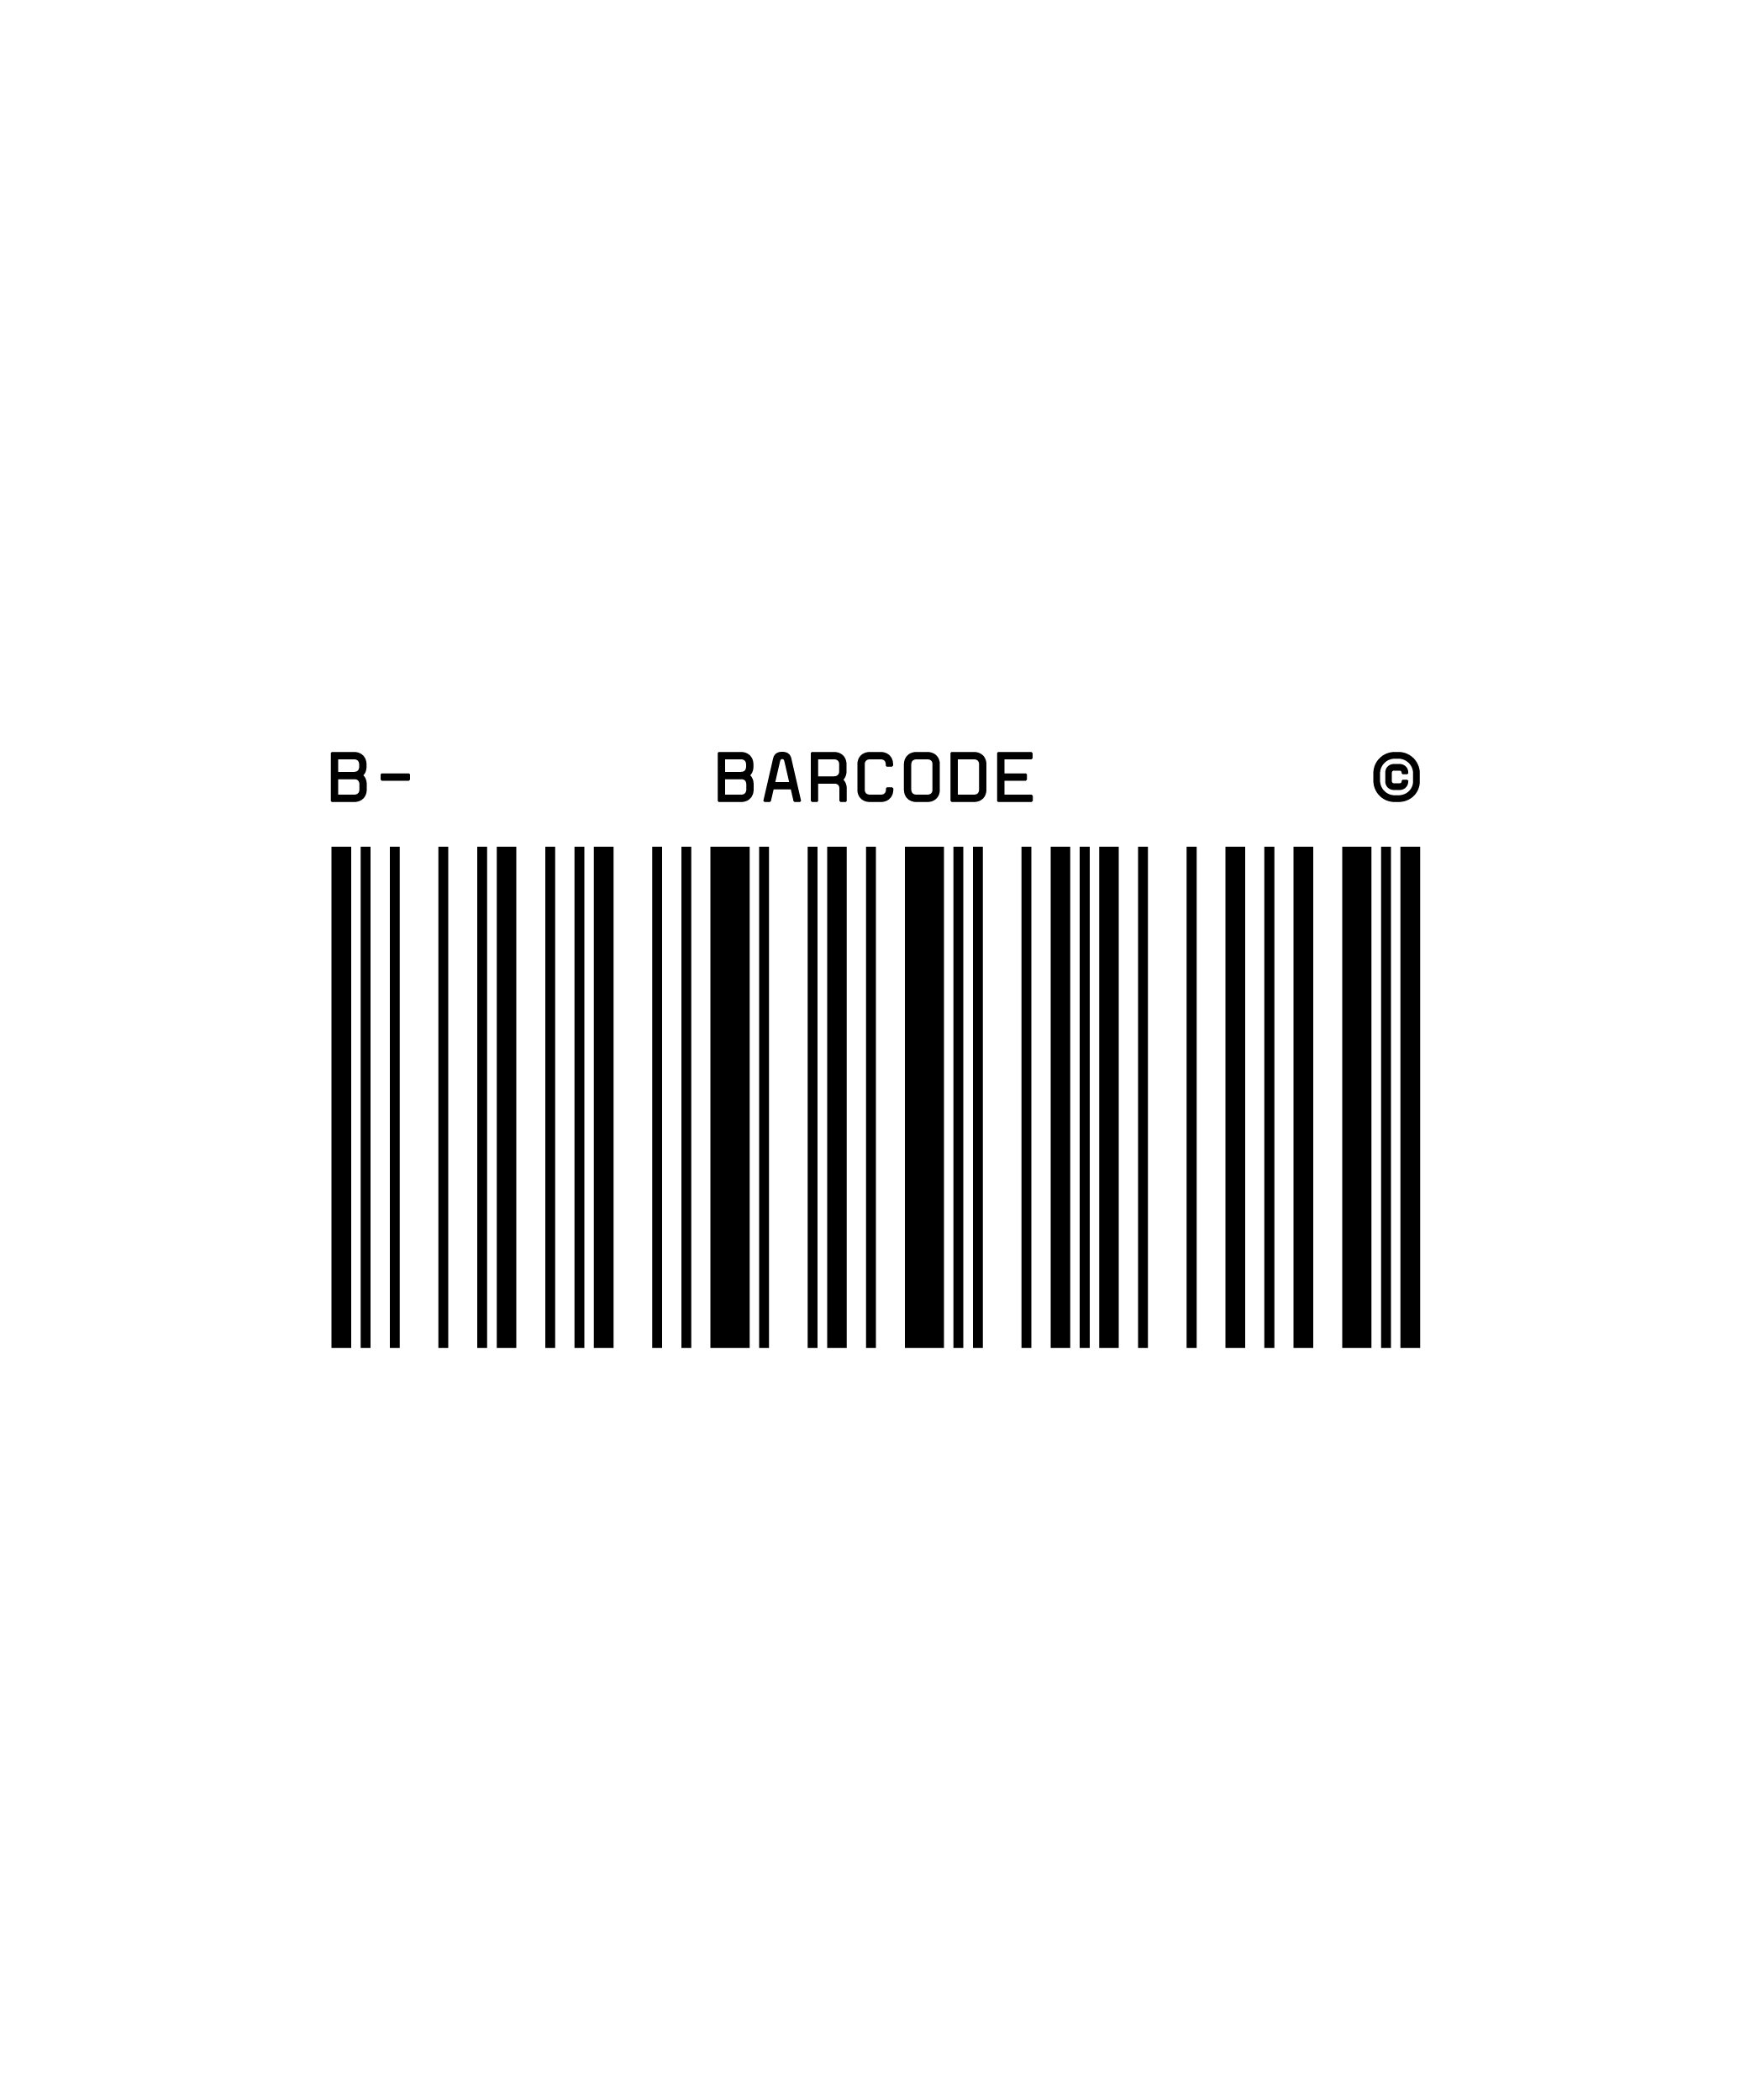 Barcode_Logos_12.17-01.jpg